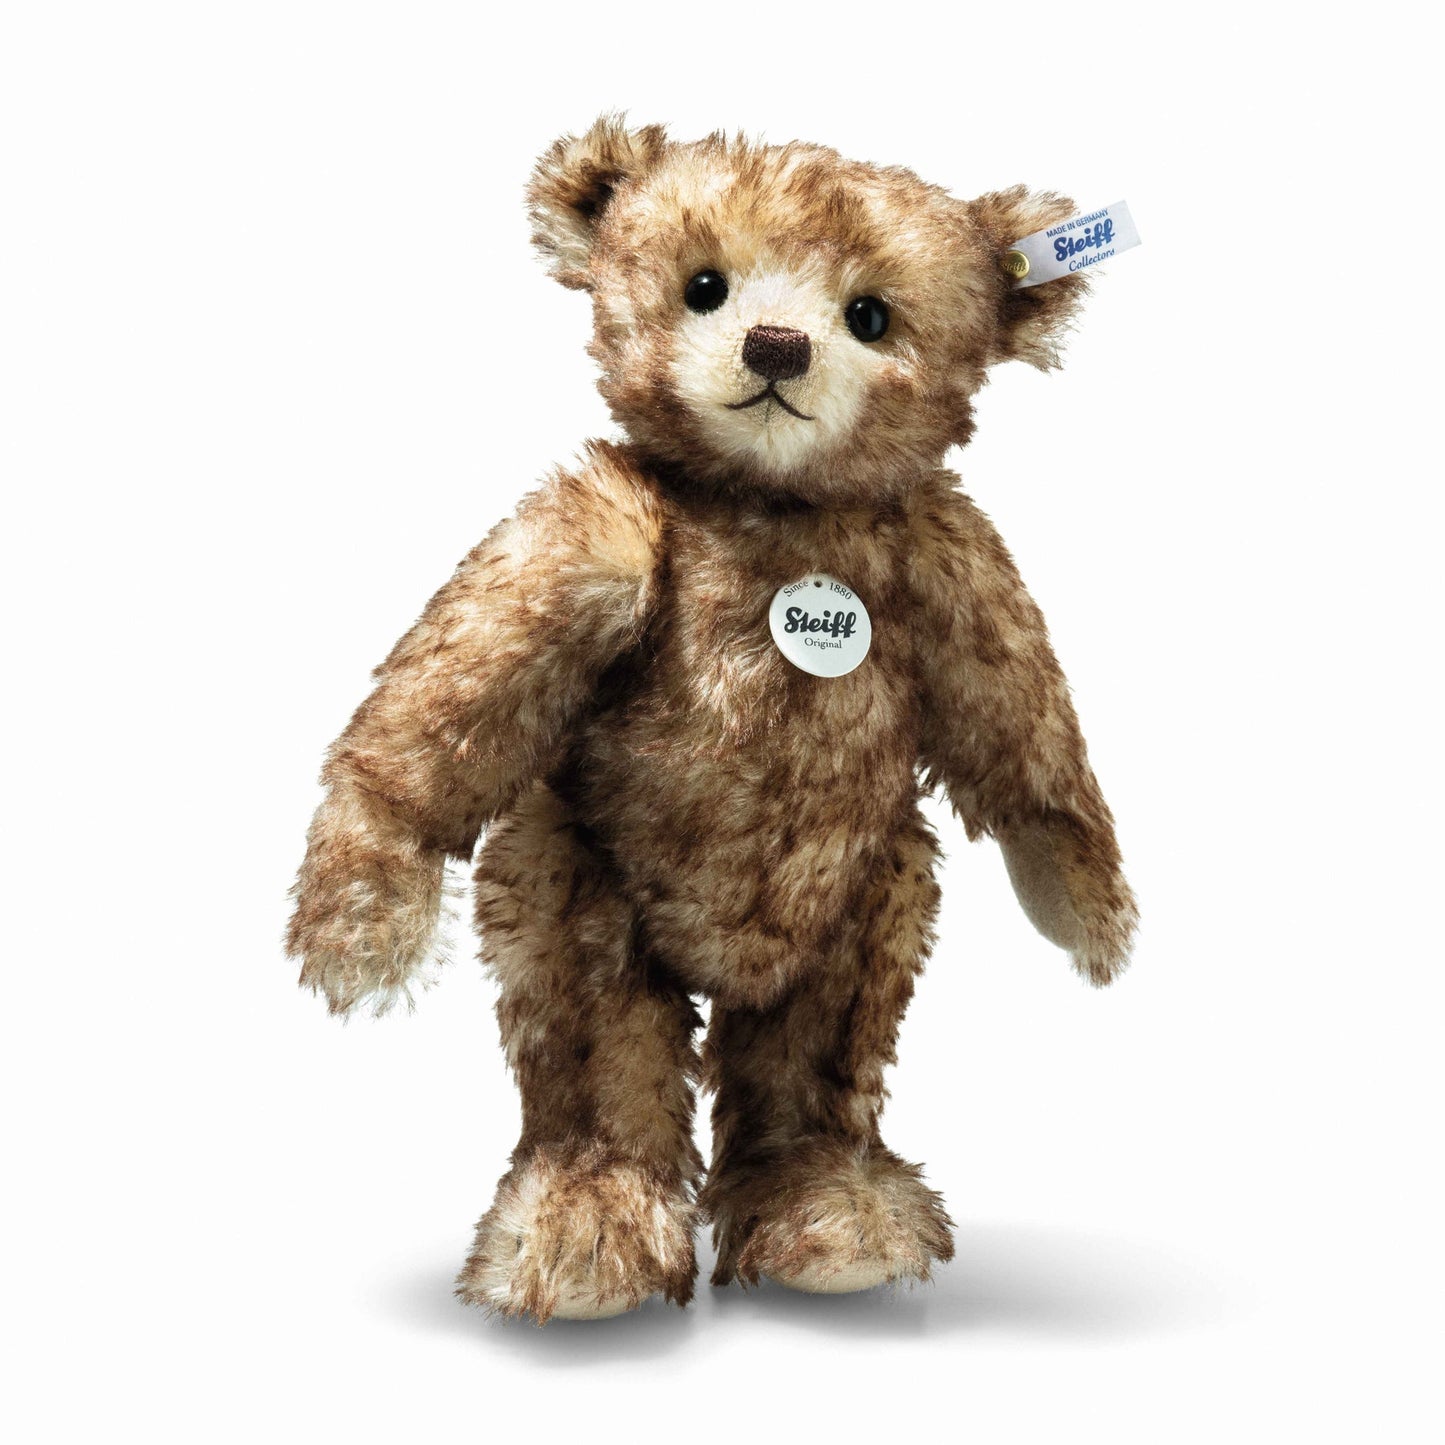 Classic Mohair Limited Edition Teddy Bear